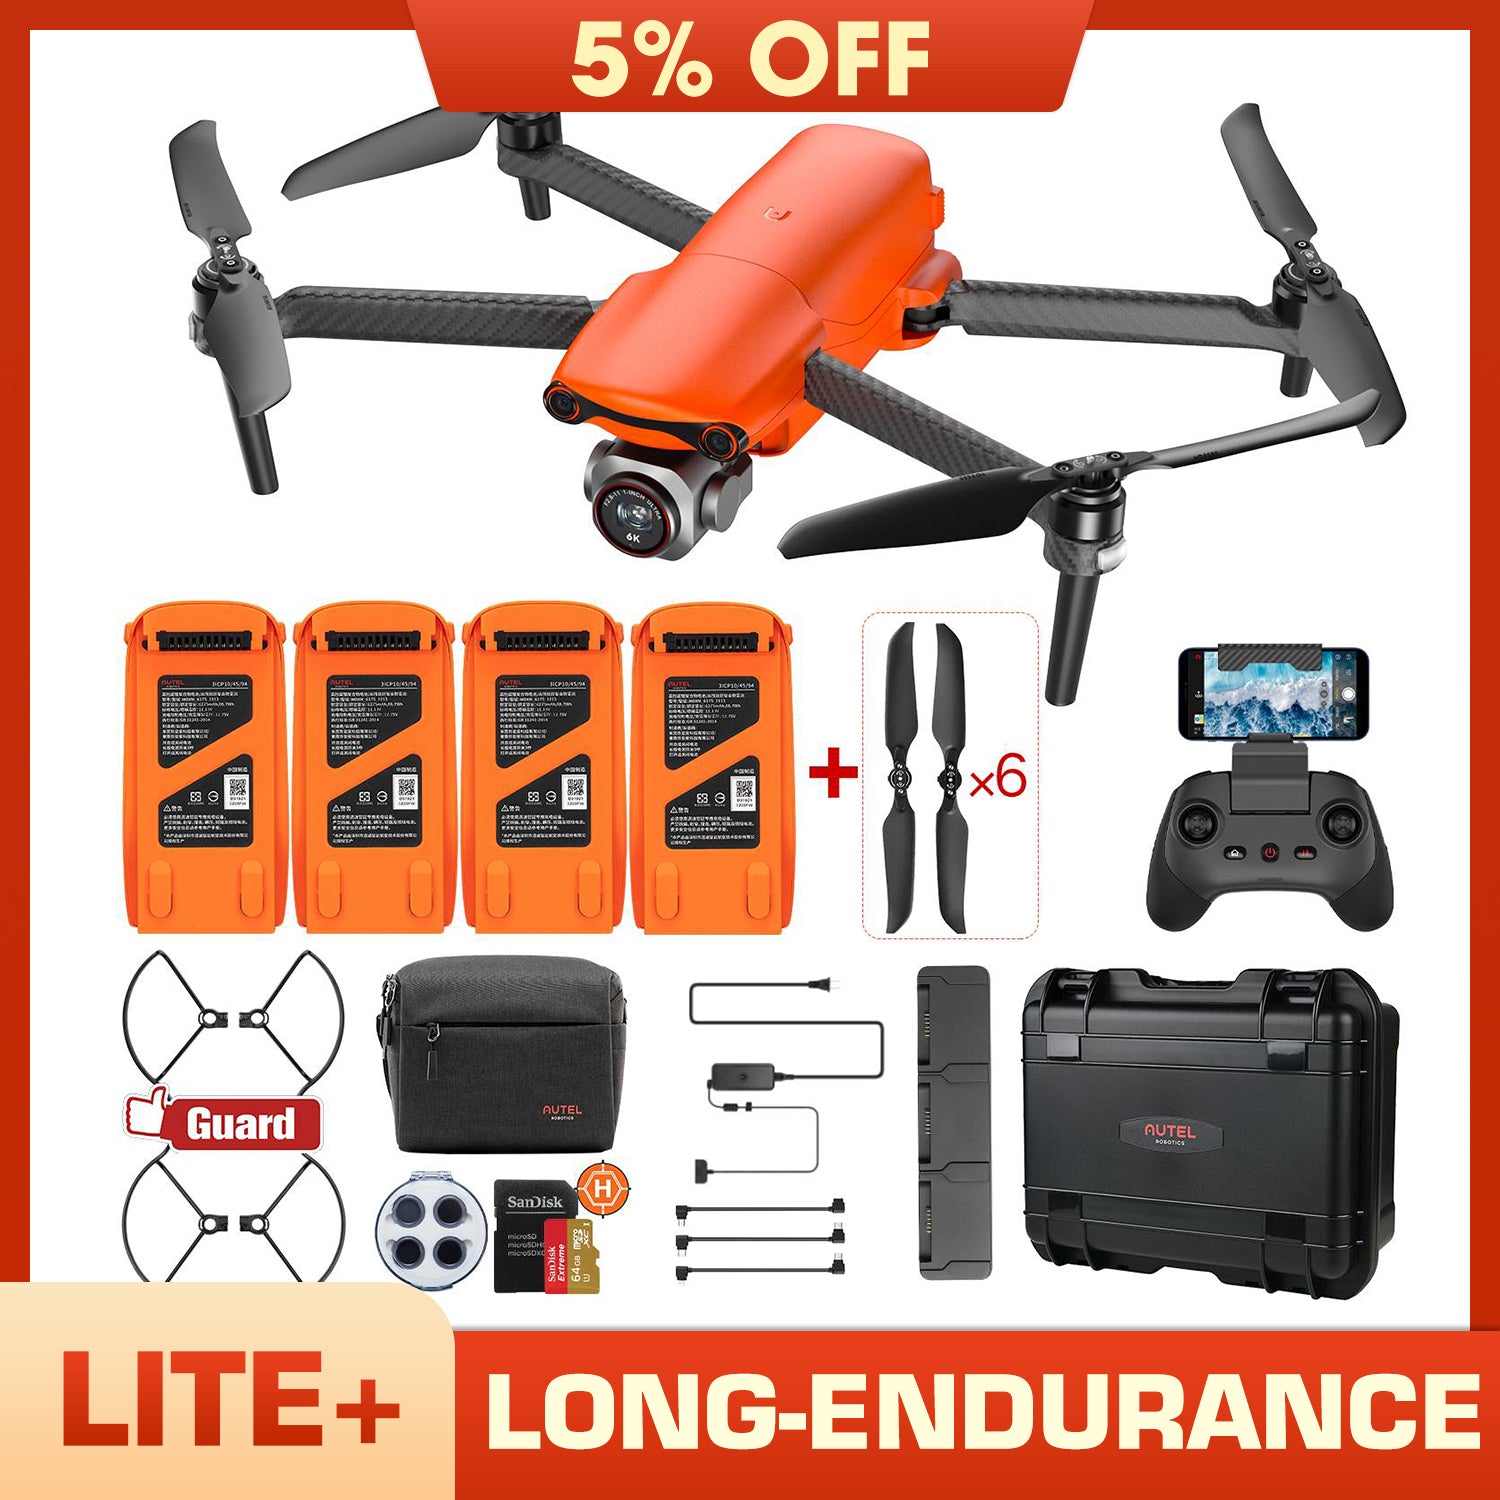 Autel Robotics EVO Lite+ Drone Long-endurance Bundle